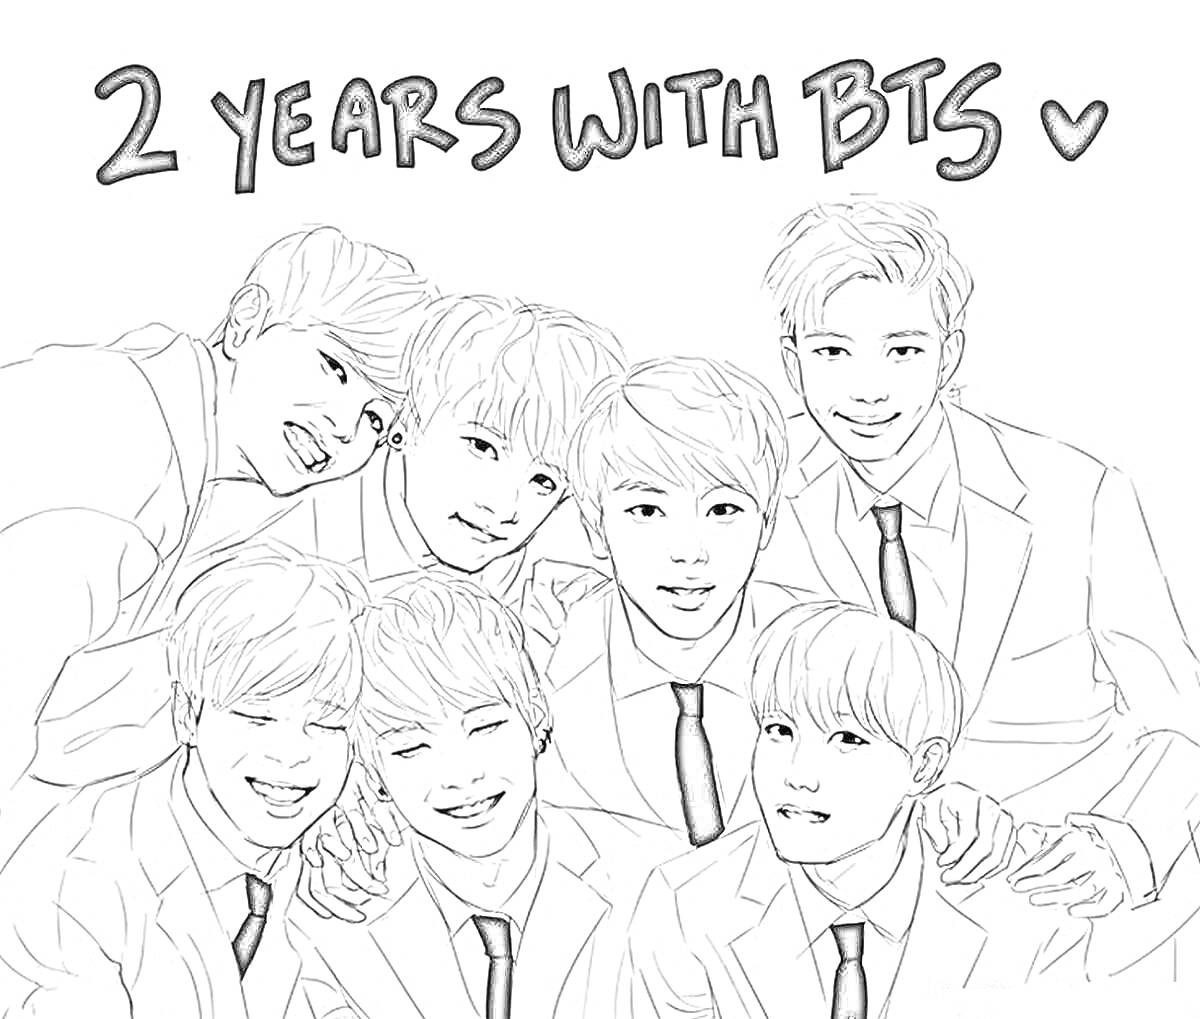 Раскраска 2 years with BTS, черно-белый портрет семи мужчин в костюмах с галстуками, один с поднятой рукой